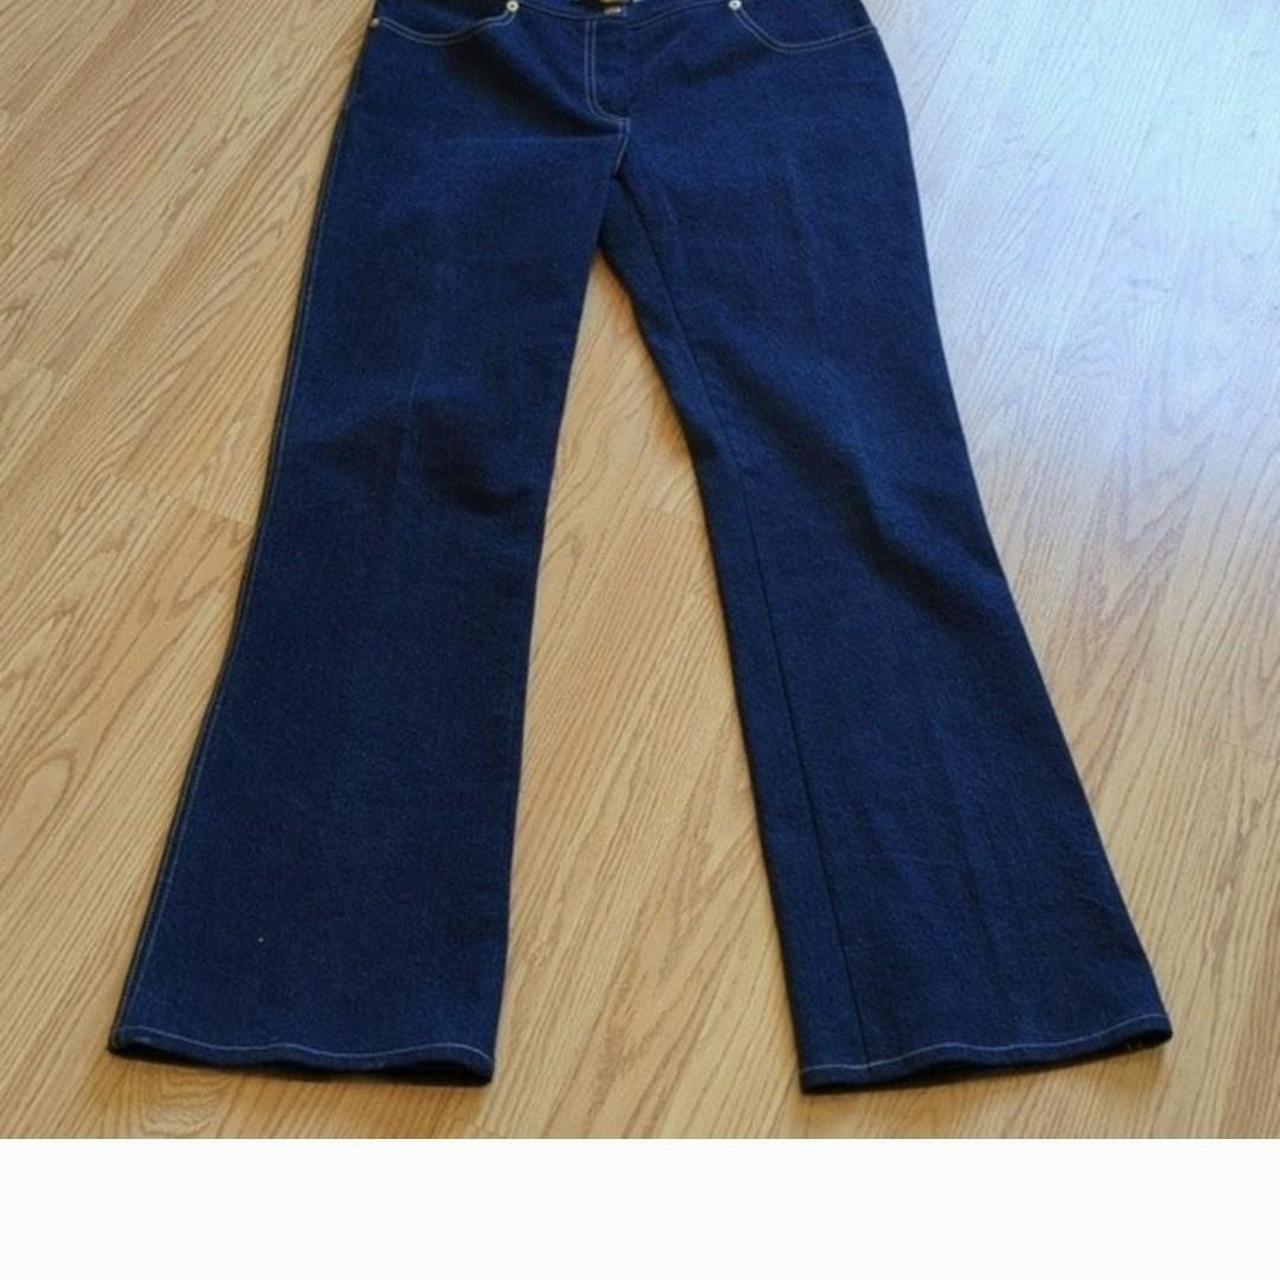 St.John jeans, embellished on back, great condition - Depop